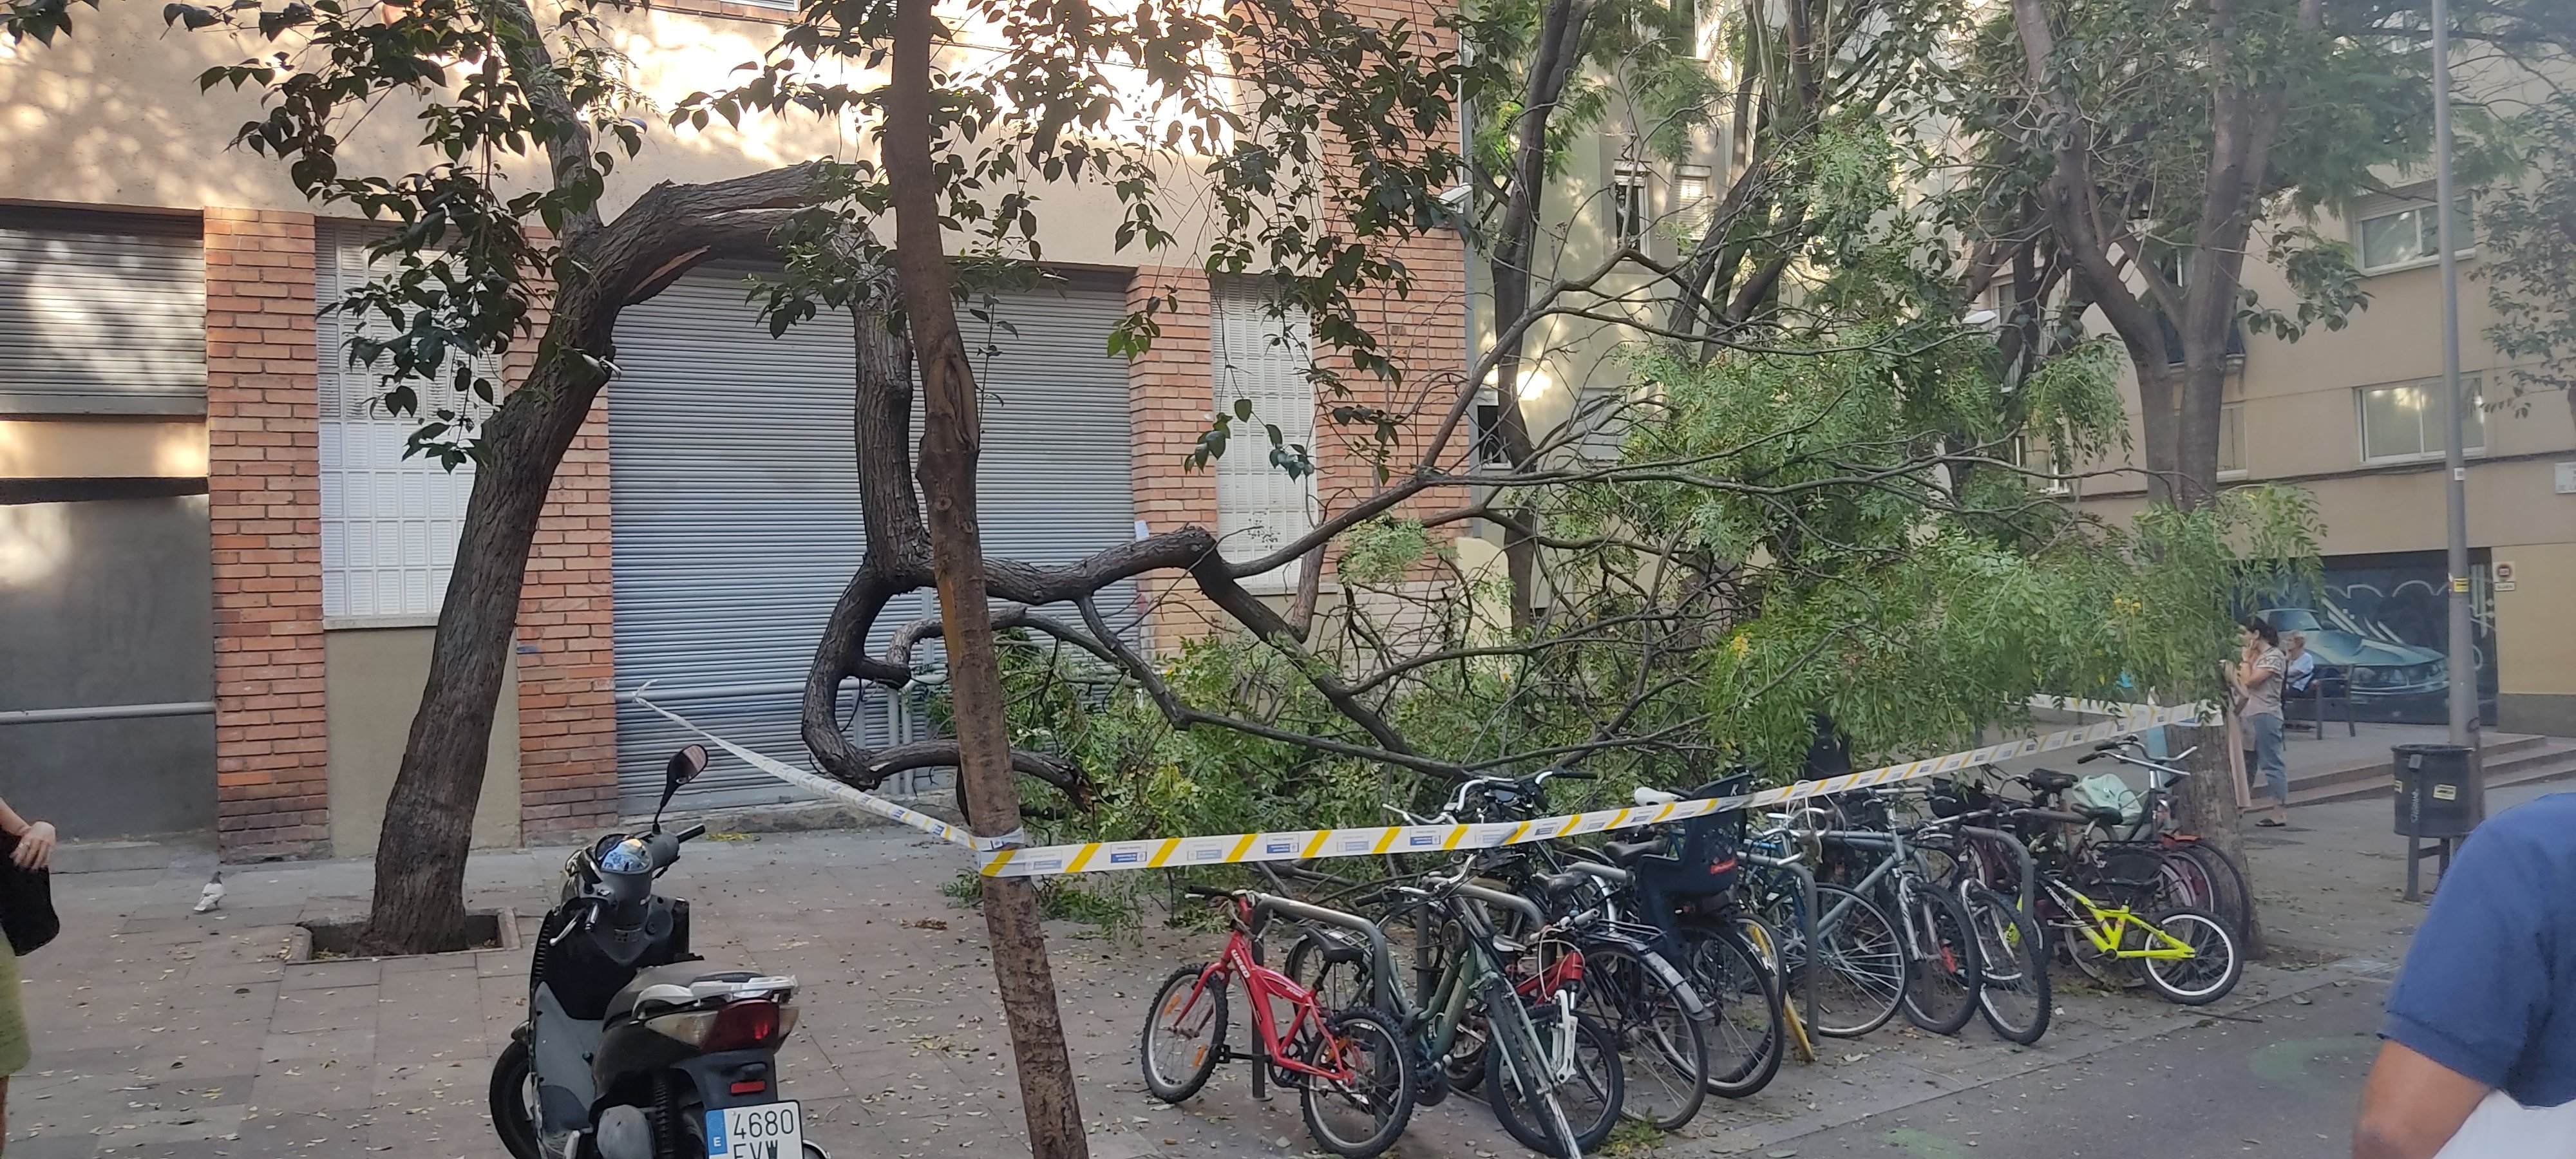 Cau un arbre de grans dimensions davant una escola al barri de Gràcia